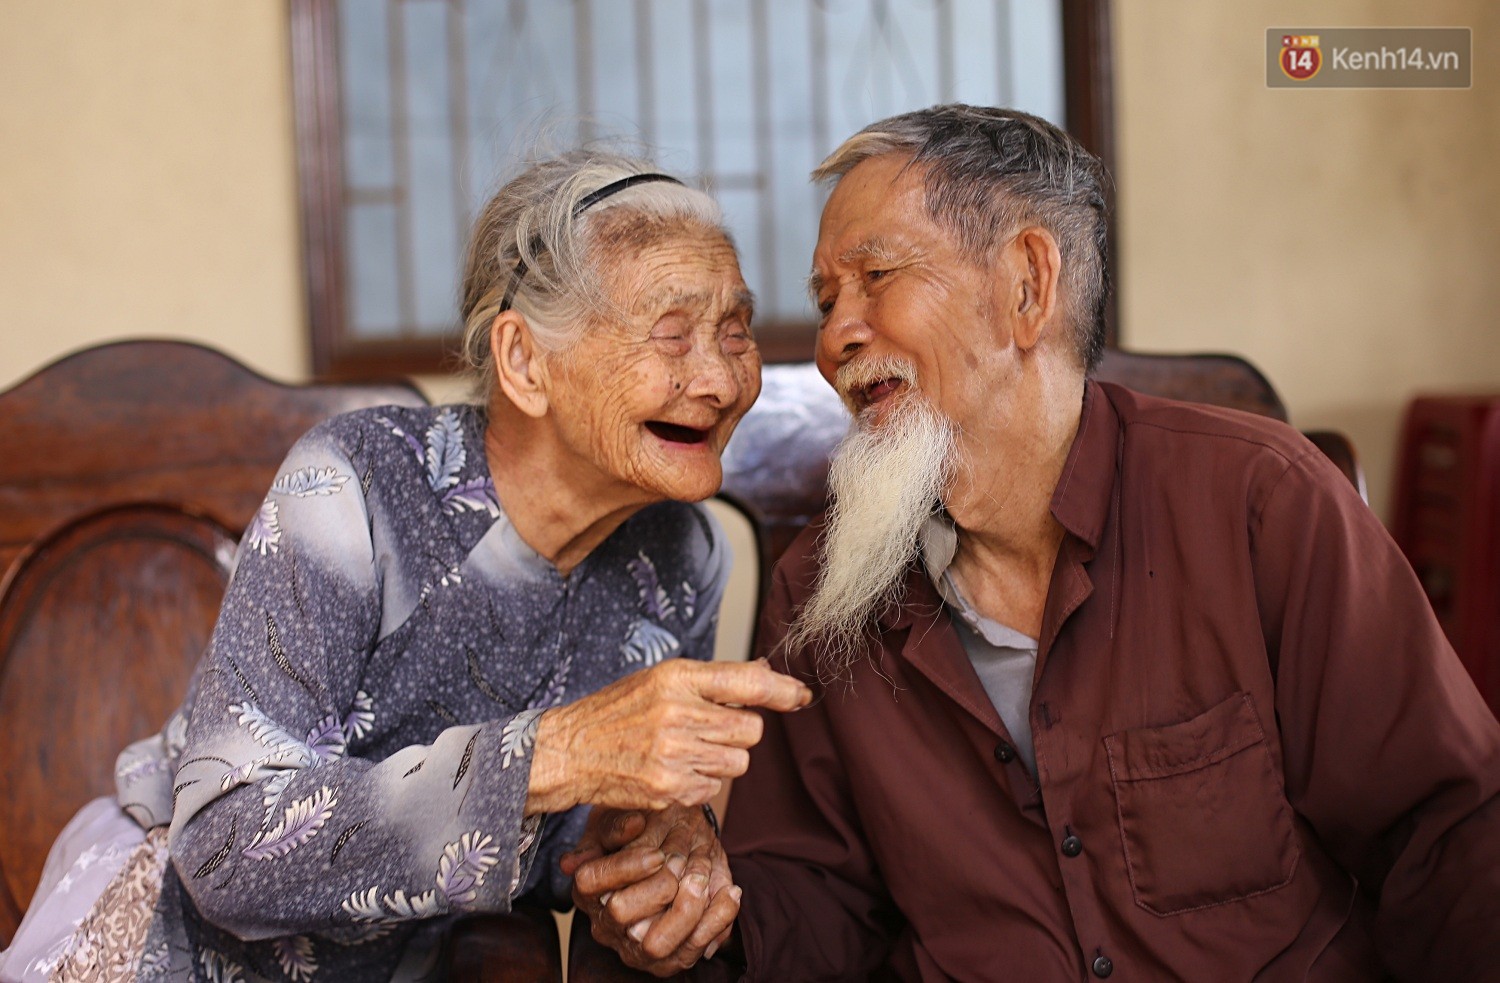 Cặp vợ chồng 94 tuổi này đã chia sẻ hơn 70 năm cùng bên nhau. Trải qua bao nhiêu thử thách của cuộc đời, tình yêu của họ vẫn luôn tình cờ muôn thuở và đậm đà đến ngỡ ngàng.